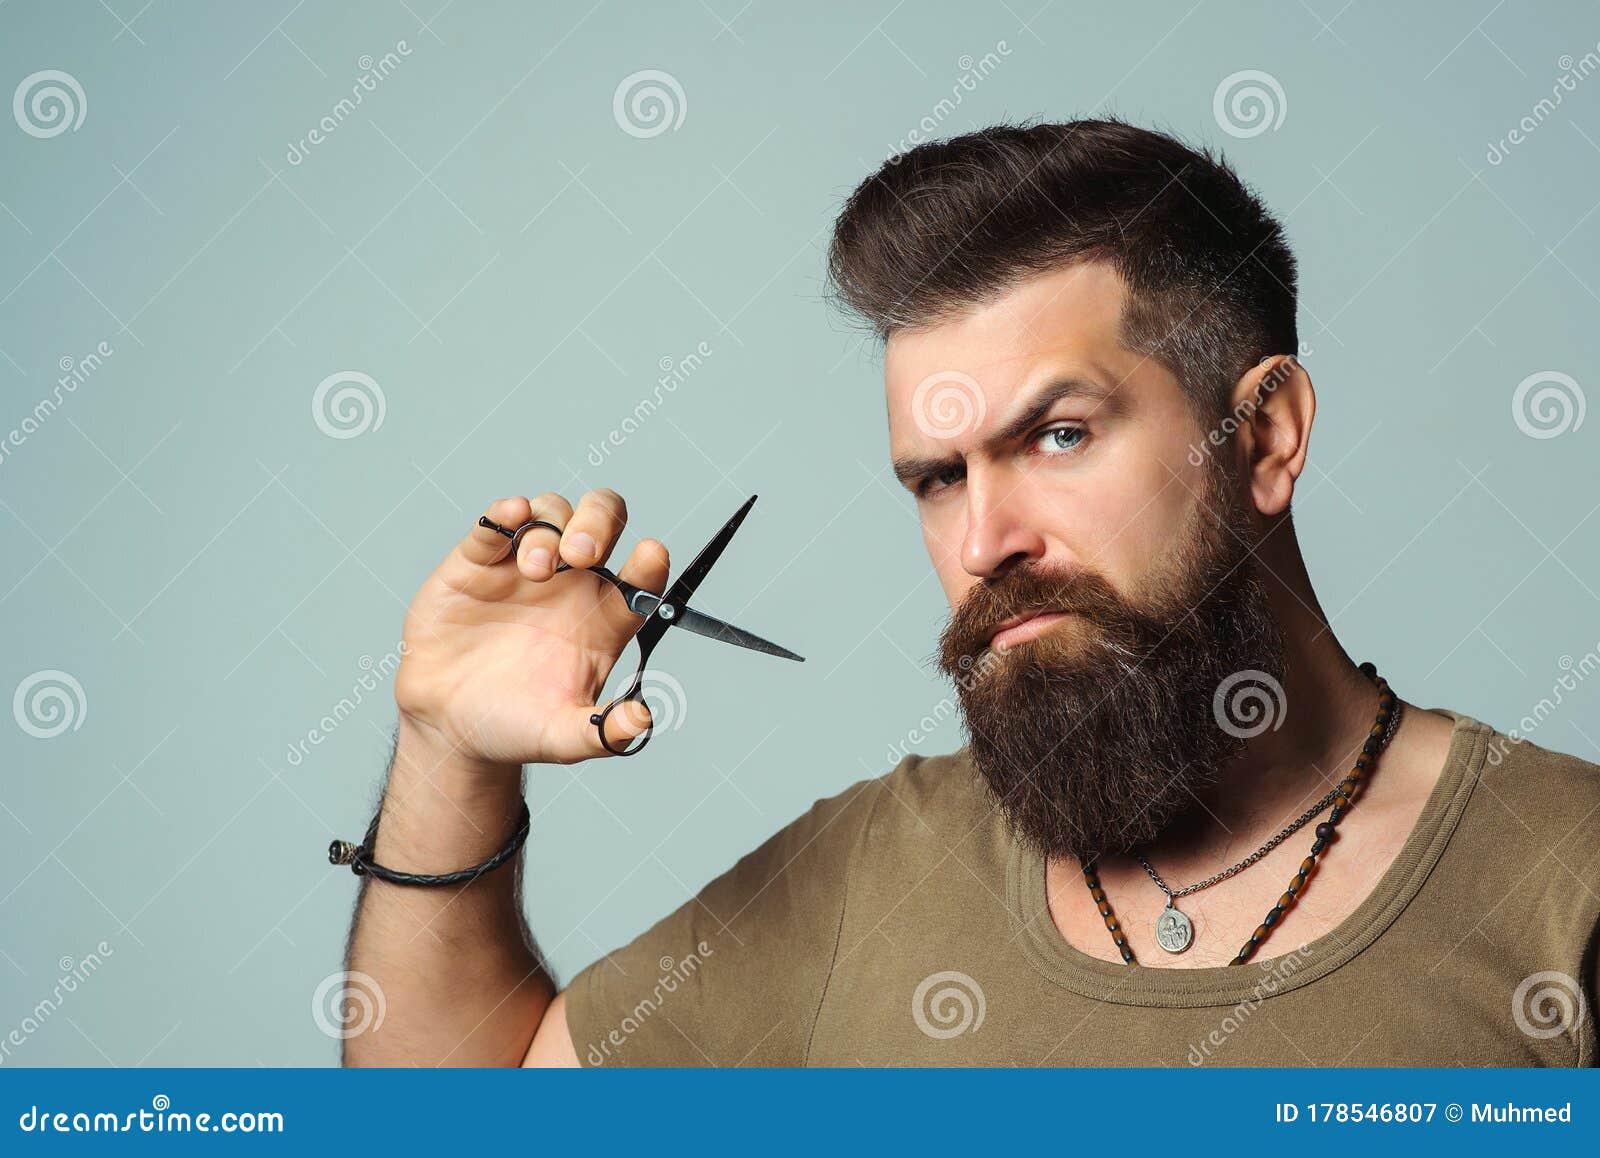 apuesto hombre barbudo en la barbería, peluquero en el trabajo